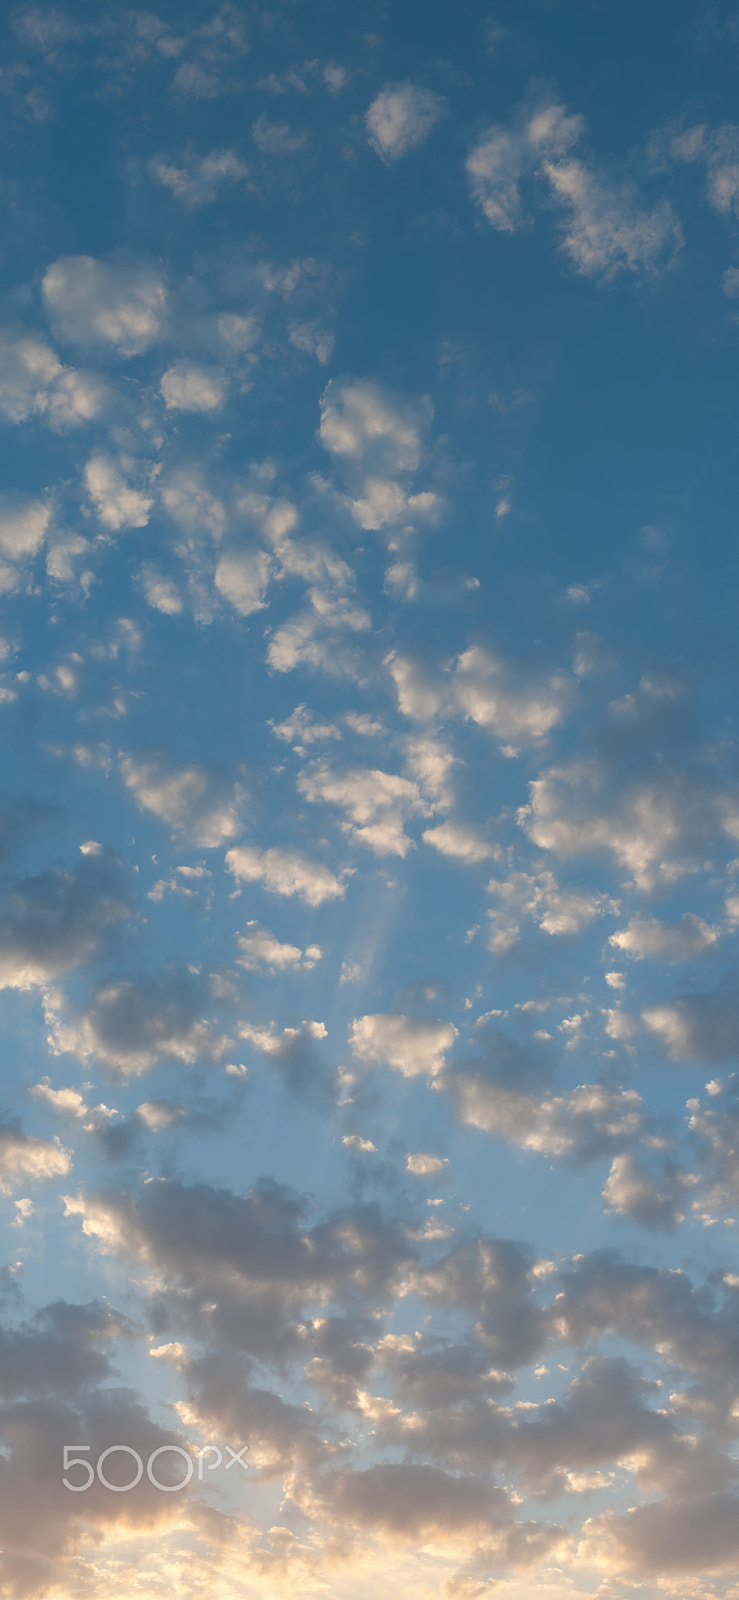 Nikon D700 sample photo. Clouds at sunset photography